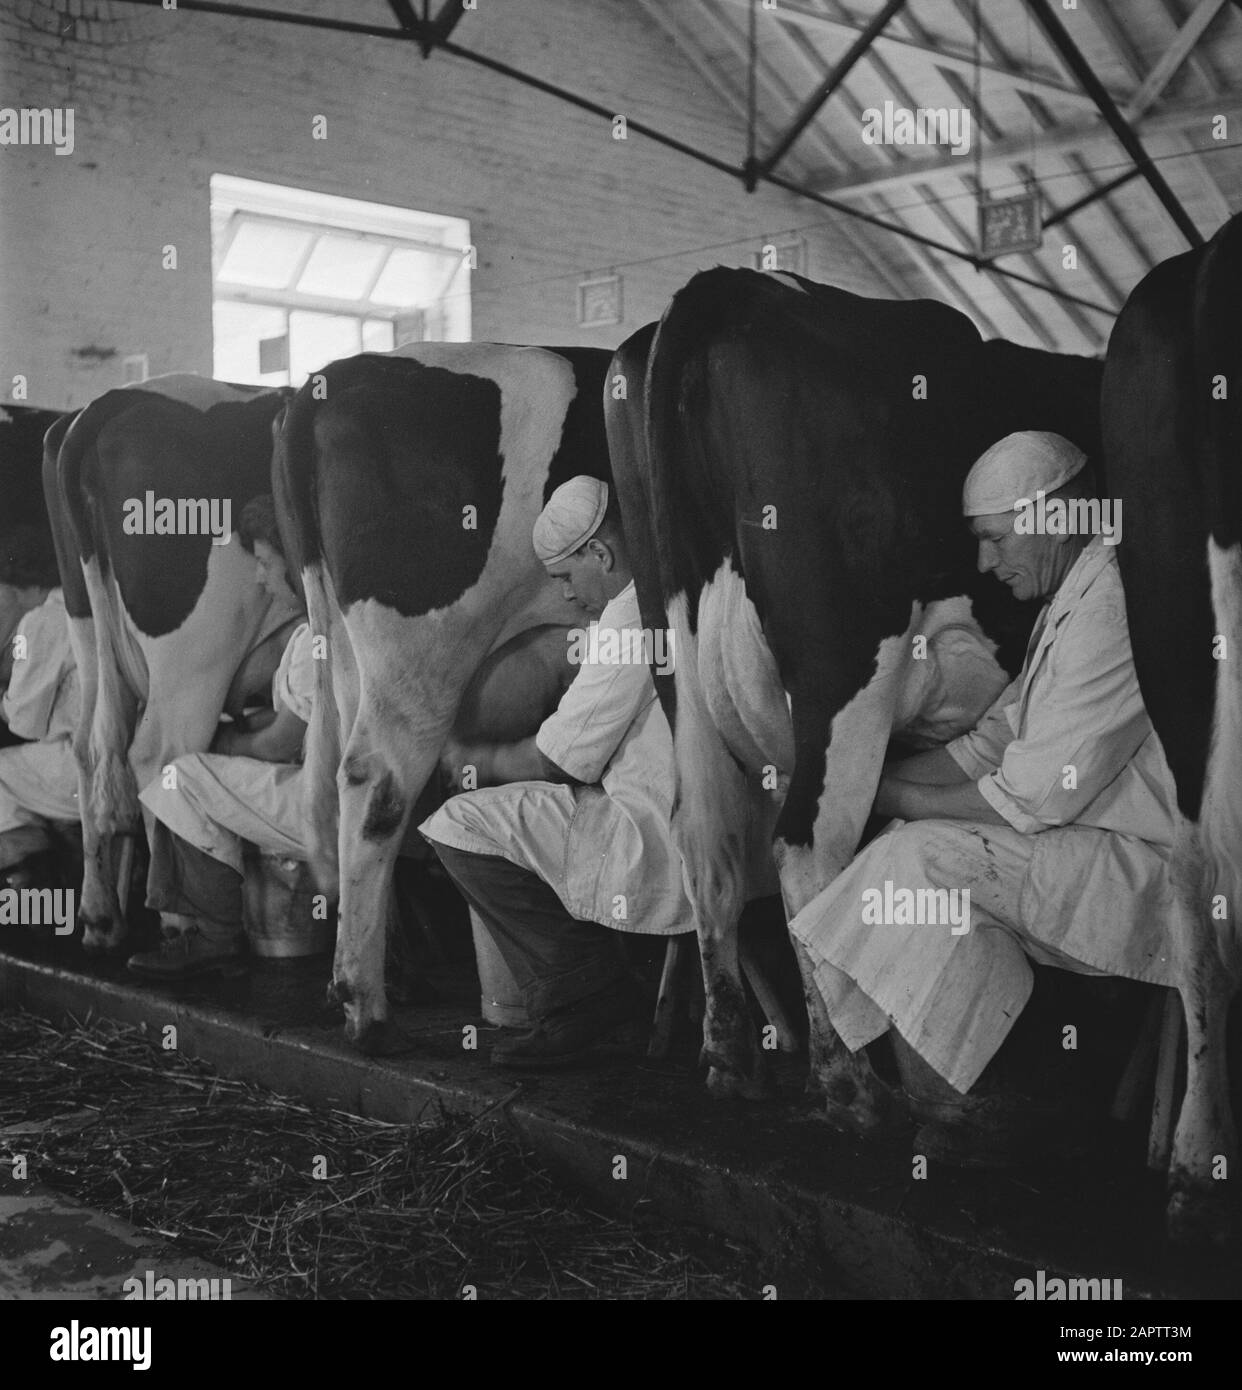 HIE [Holland in England]/Anefo London Serie 1938 Holland hatte etwa 1,5 Millionen Milchkühe, die durchschnittlich 1000 Gallonen Milch pro P.a. Produzierten, mit einem Fettgehalt von 3,56. Viele Meisterkühe und Bullen wurden exportiert, um neue Herden in mehreren Ländern zu gründen. Die beiden ältesten in England ansässigen Herden sind die Terling- und die Lavenham-Herde, die mehr als 1500 Kopf an Lord Ralleighs Farmen in Essex zählen. Diese Herden - attestiert und tuberkulin getestet - haben viele Champions enthalten und erste Preise bei Milchmessen bereits im ganzen Land gewonnen. Melkzeit Datum: Juni 1943 Ort: Essex, Stockfoto